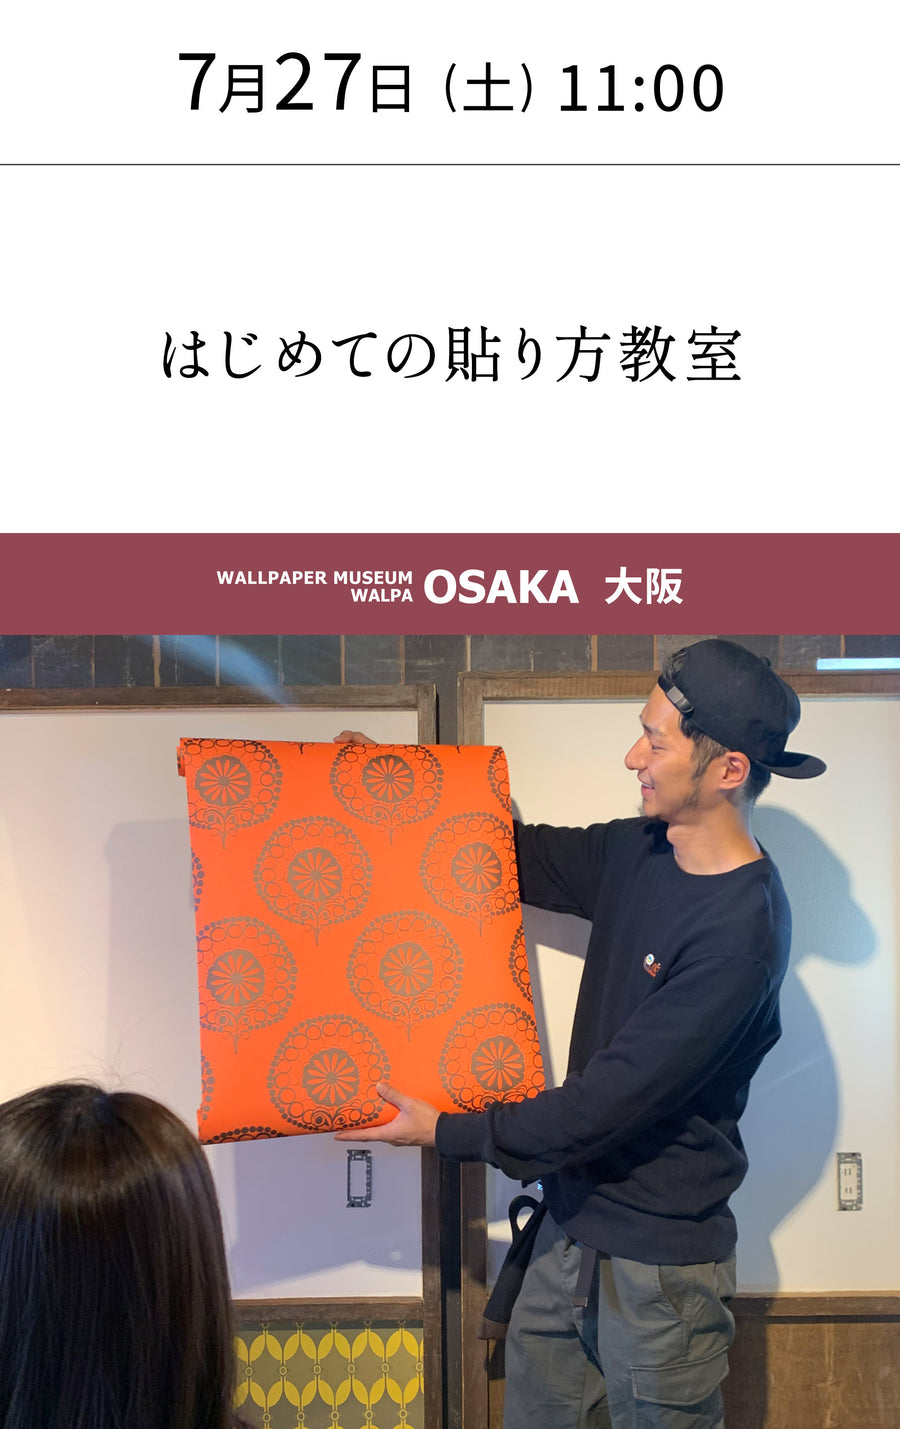 7月27日(土) 11:00～WALLPAPER MUSEUM WALPA / OSAKA ワークショップ 「はじめての貼り方教室」